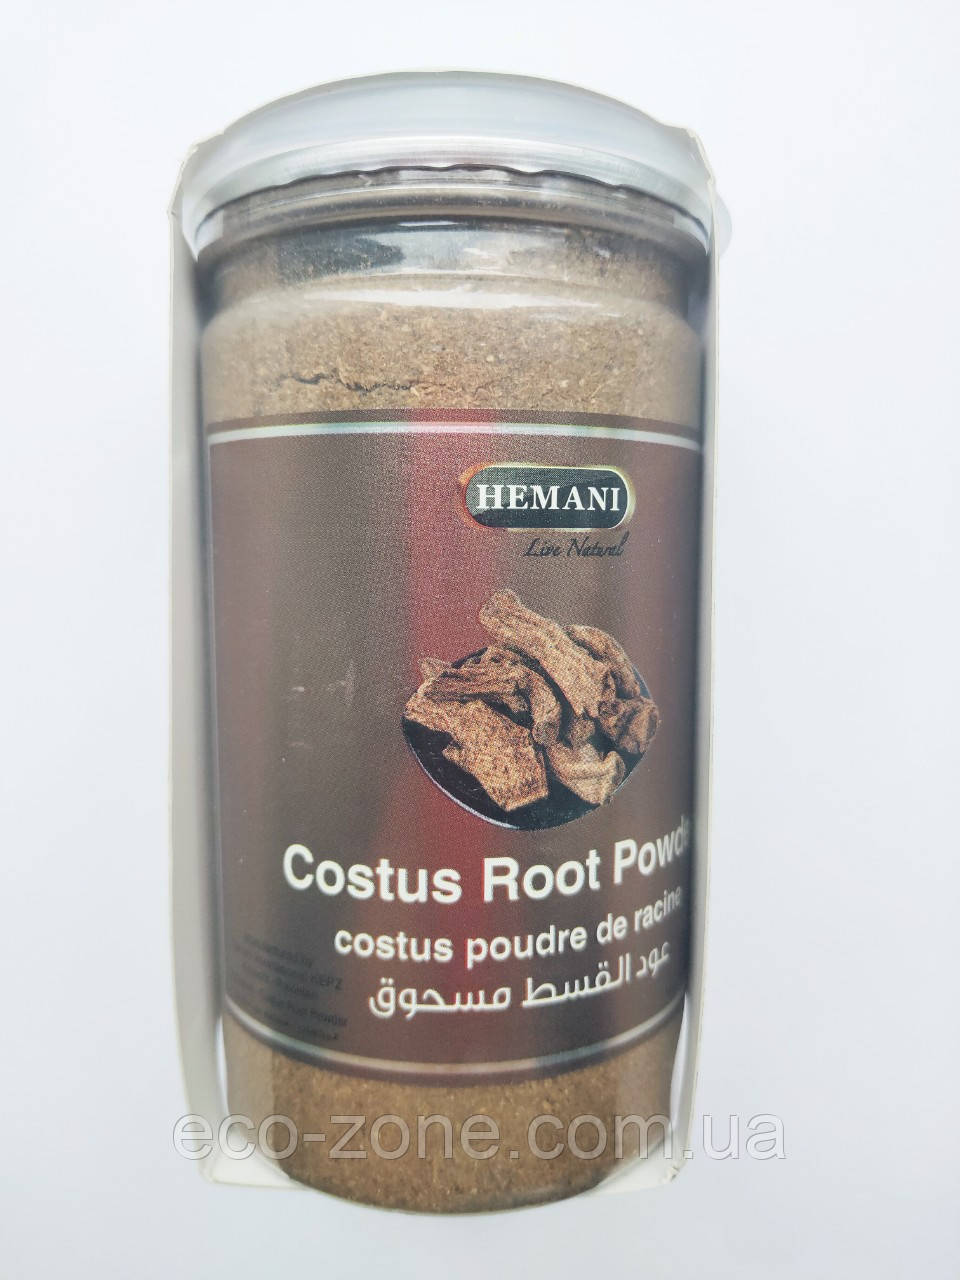 Кист аль Хінді порошок Costus Root Powder Hemani, 200г Хемани. Срок до 12/2025